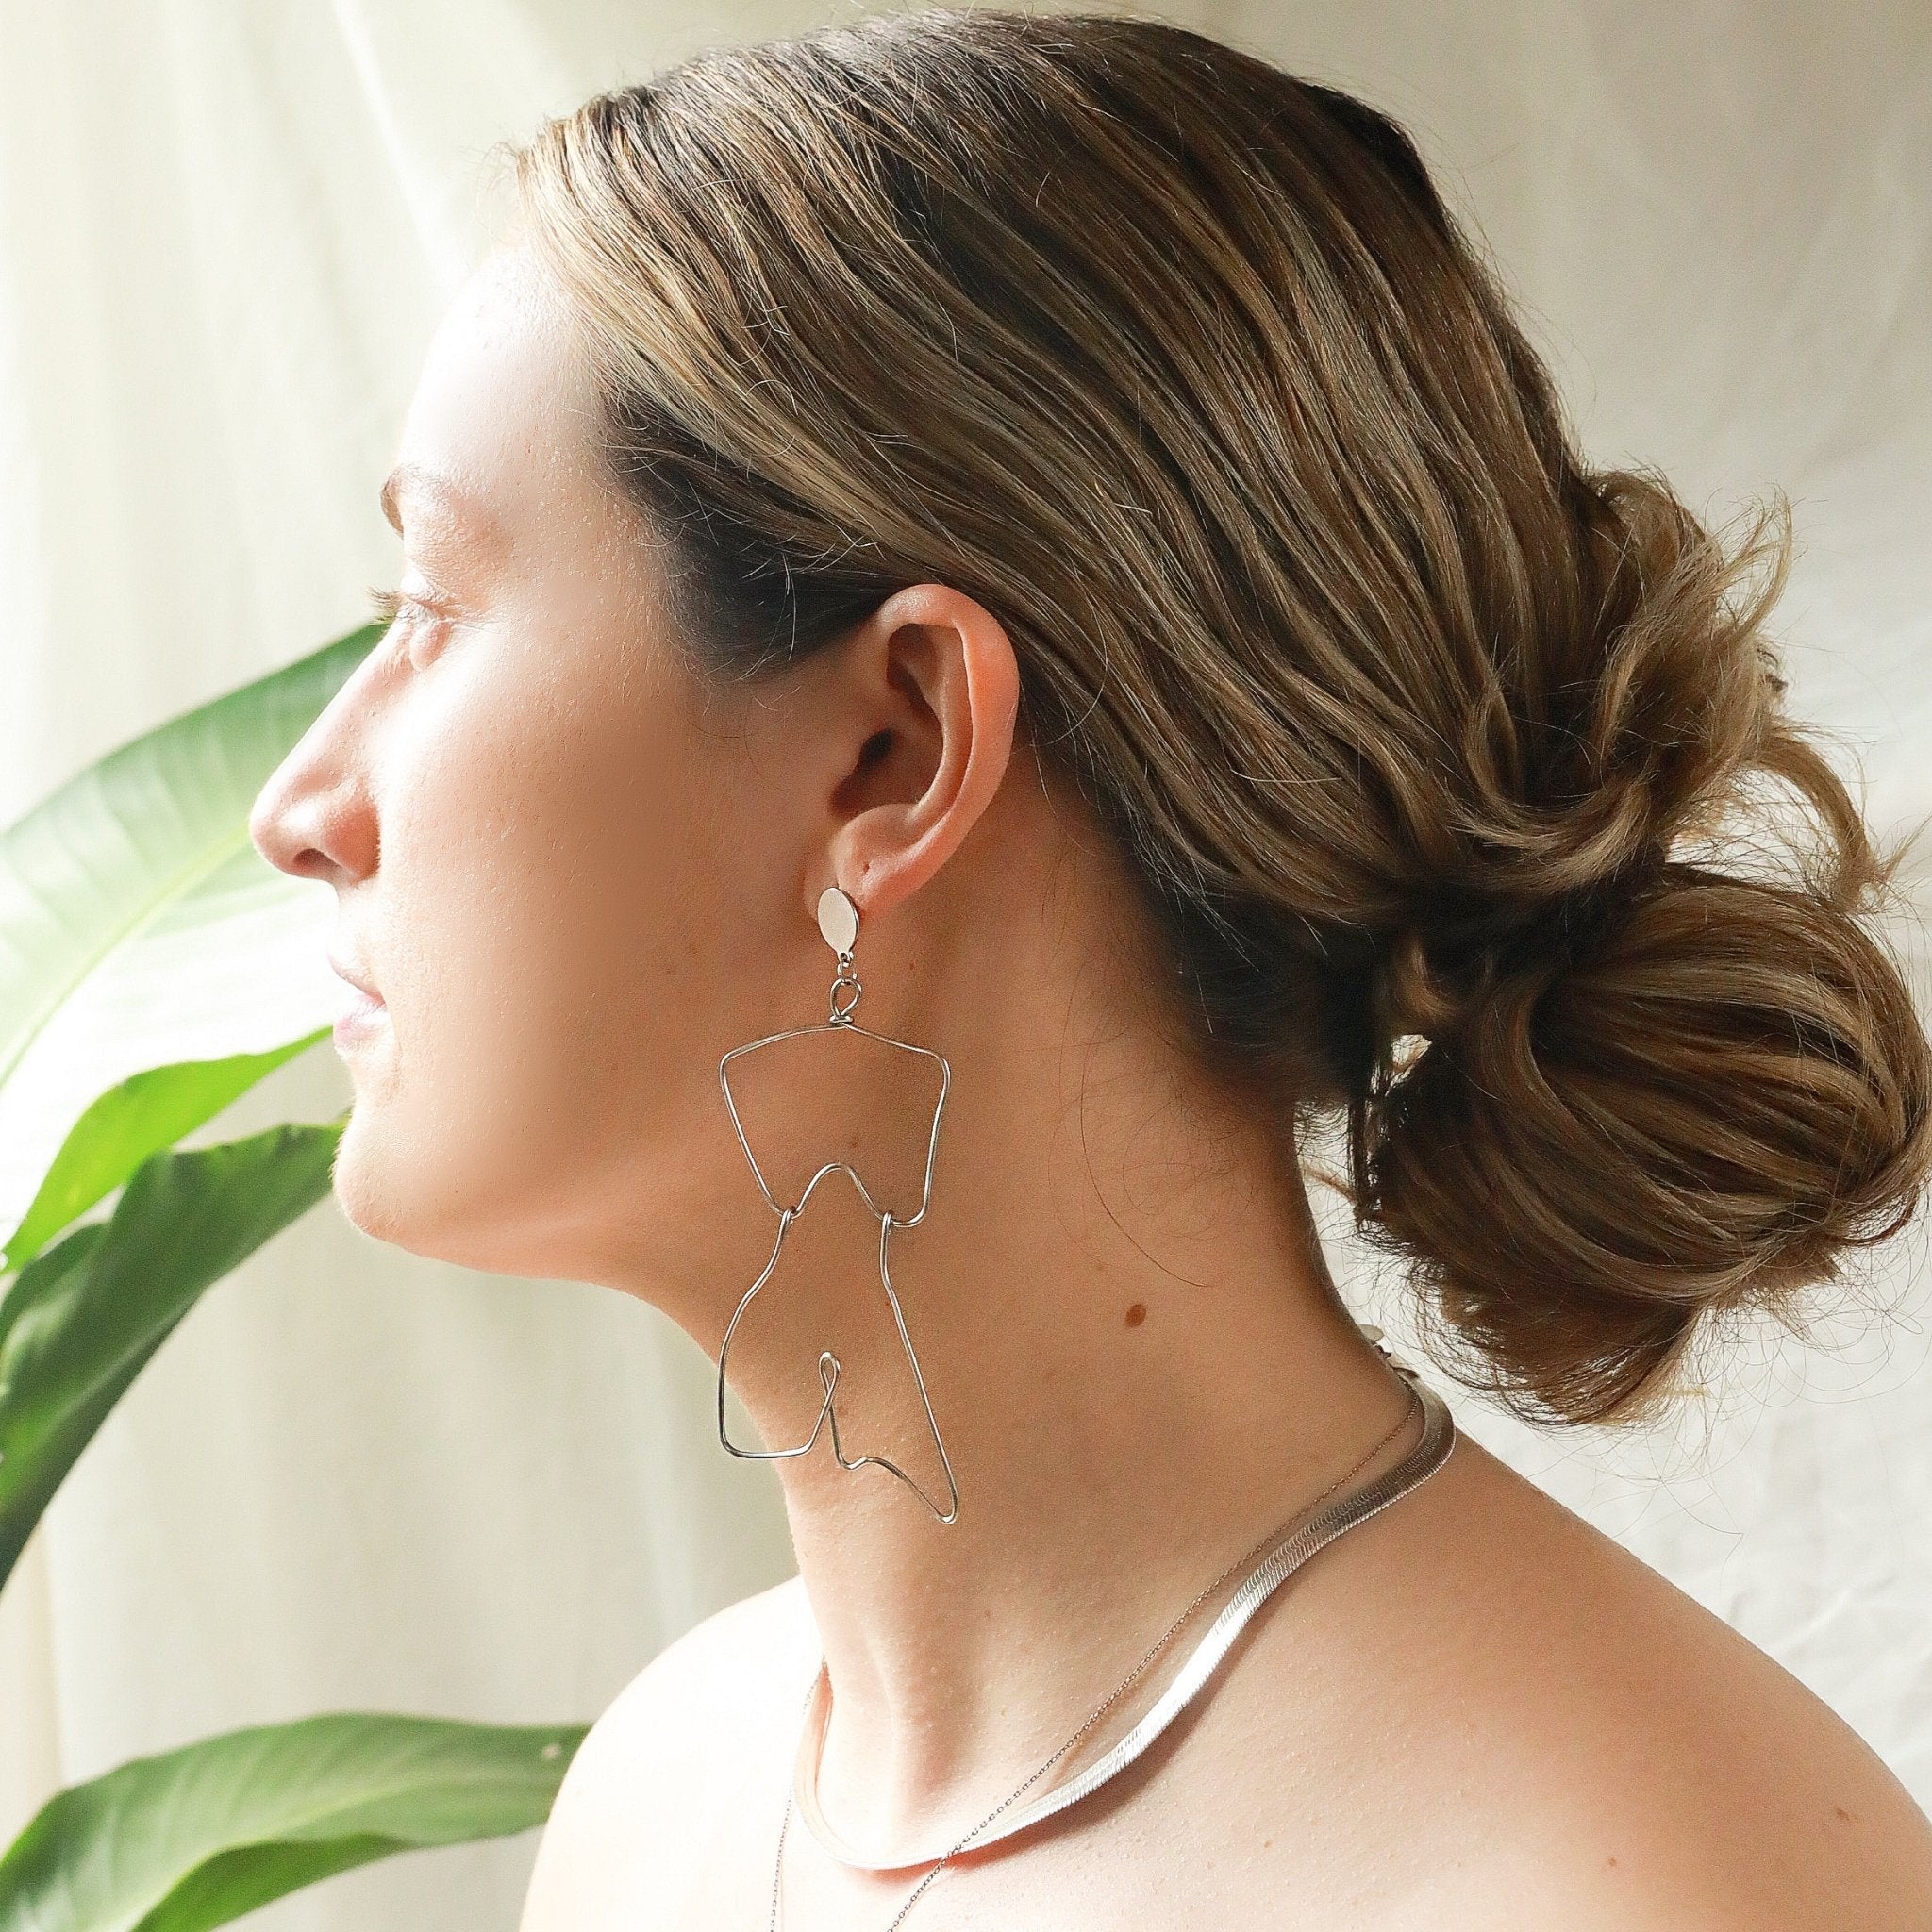 Body-ody Earring - AIRI Jewelry & Gallery -Earrings